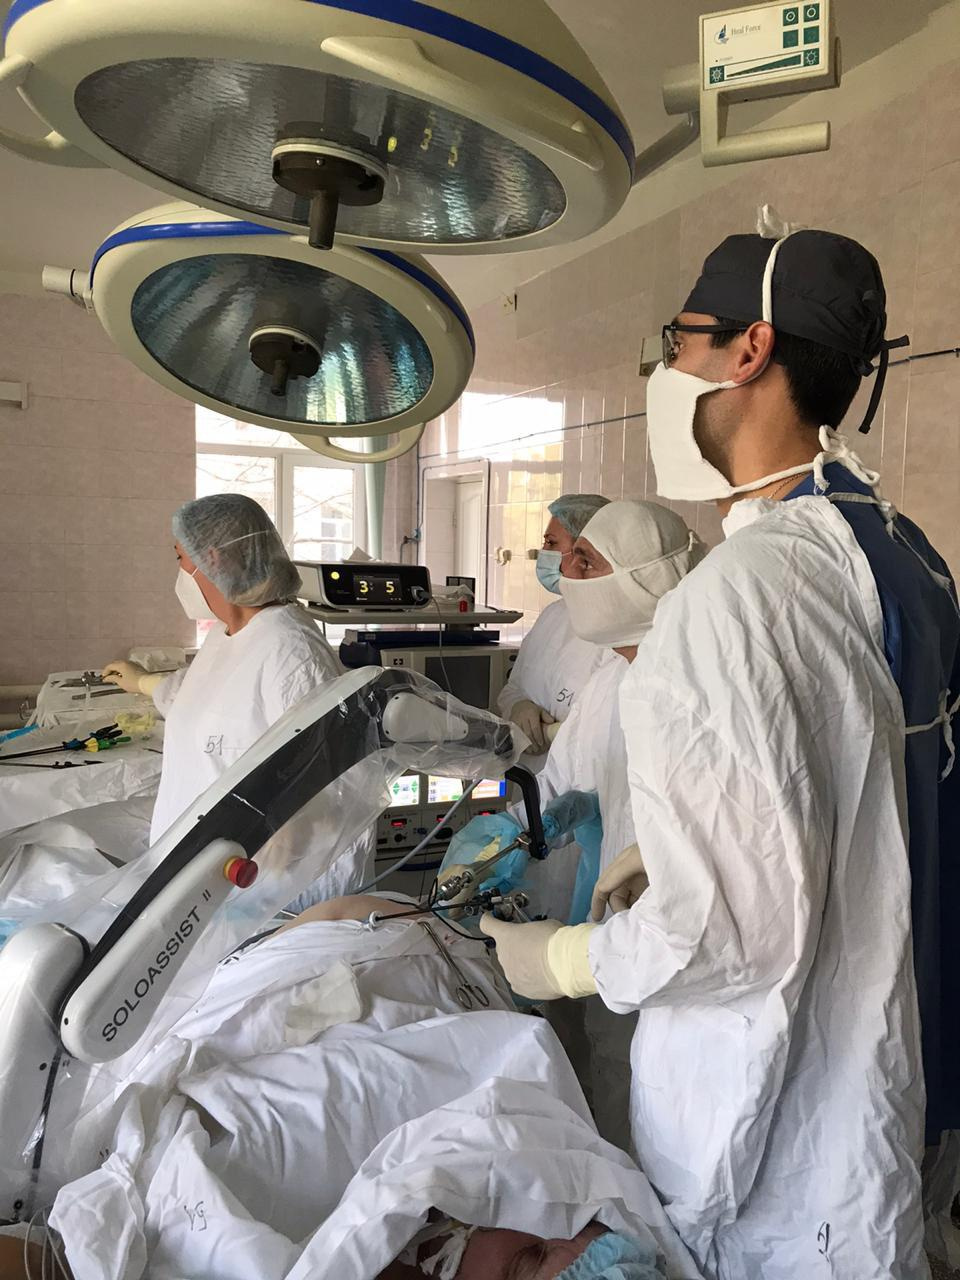 «Рука» робота может держать камеру или эндоскоп во время операции в нужном положении, облегчая задачу хирургам